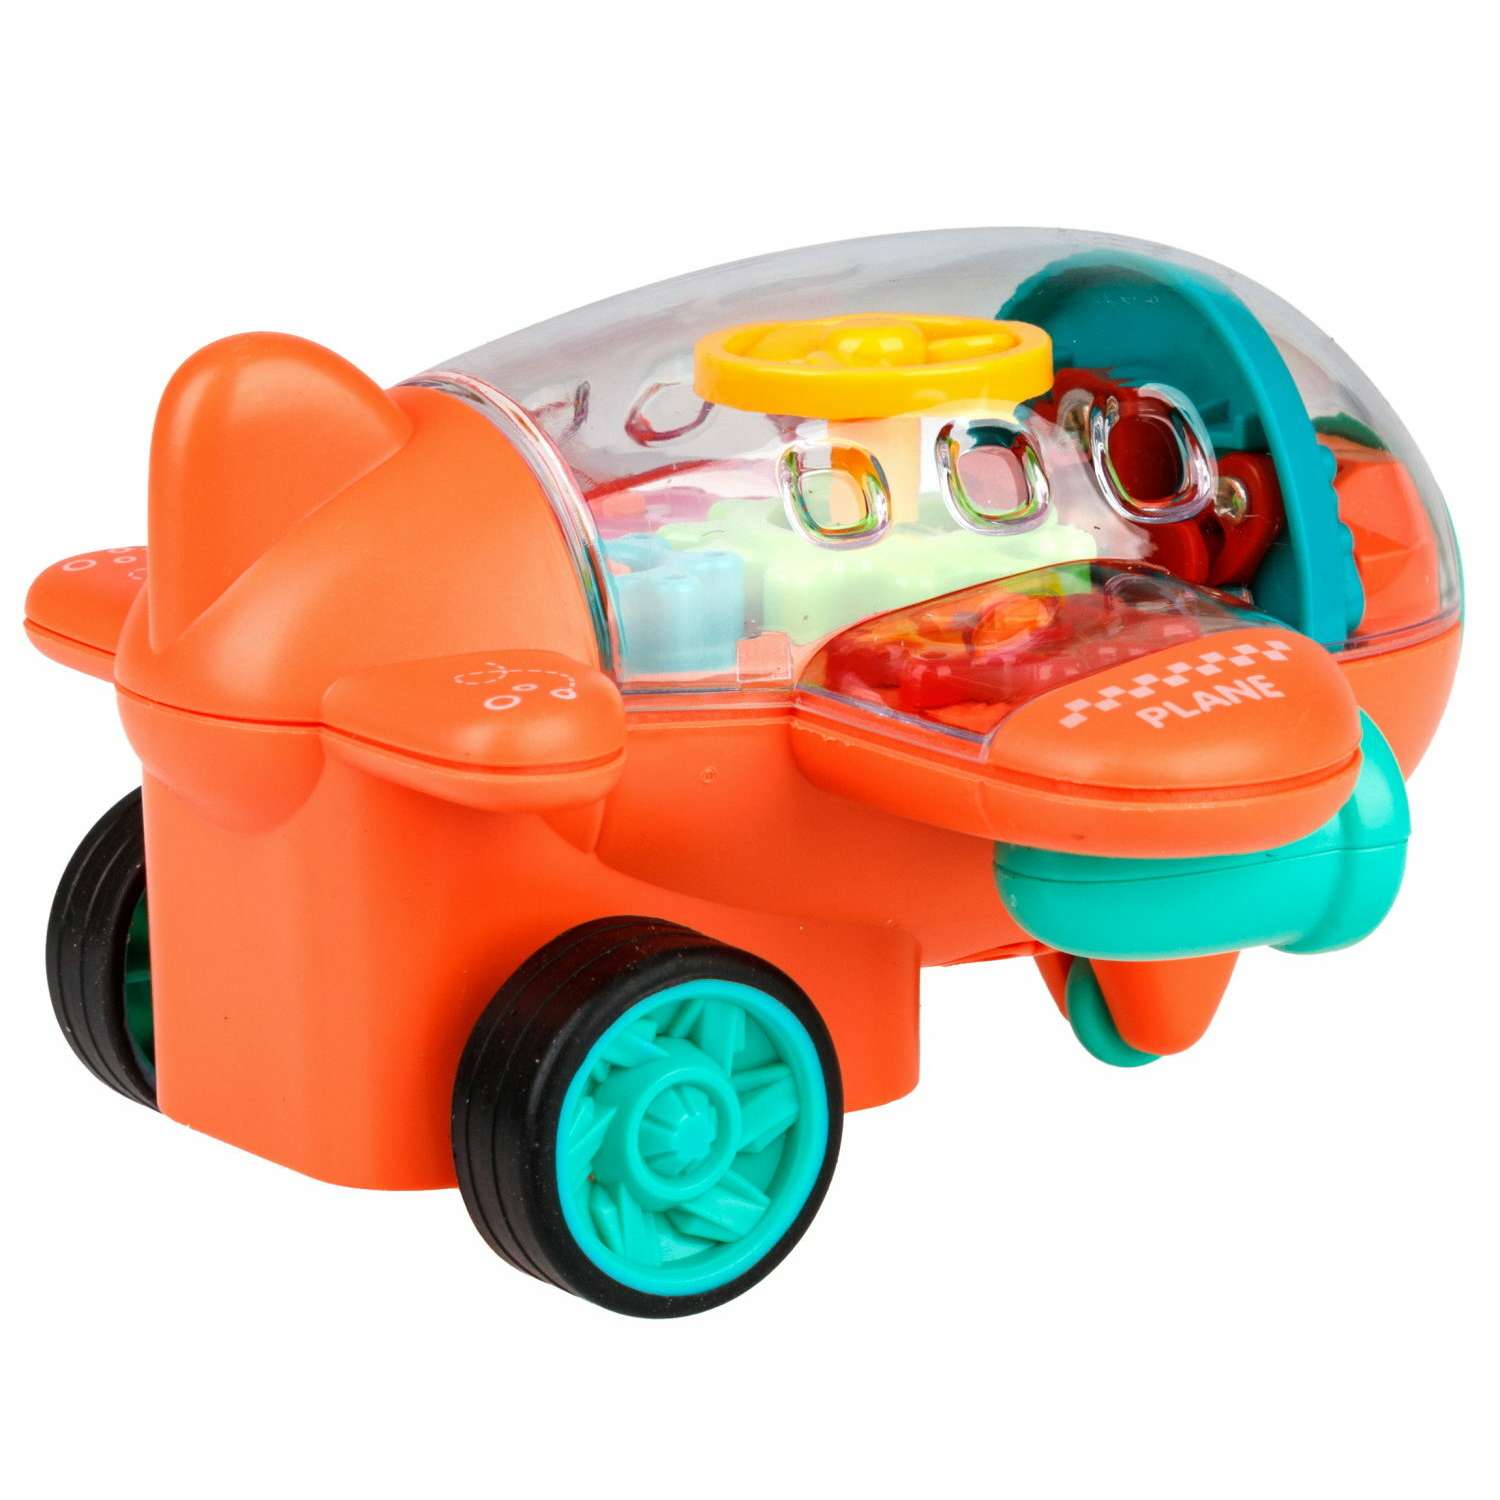 Самолет игрушка для детей 1TOY Движок оранжевый прозрачный с шестеренками светящийся на батарейках - фото 2